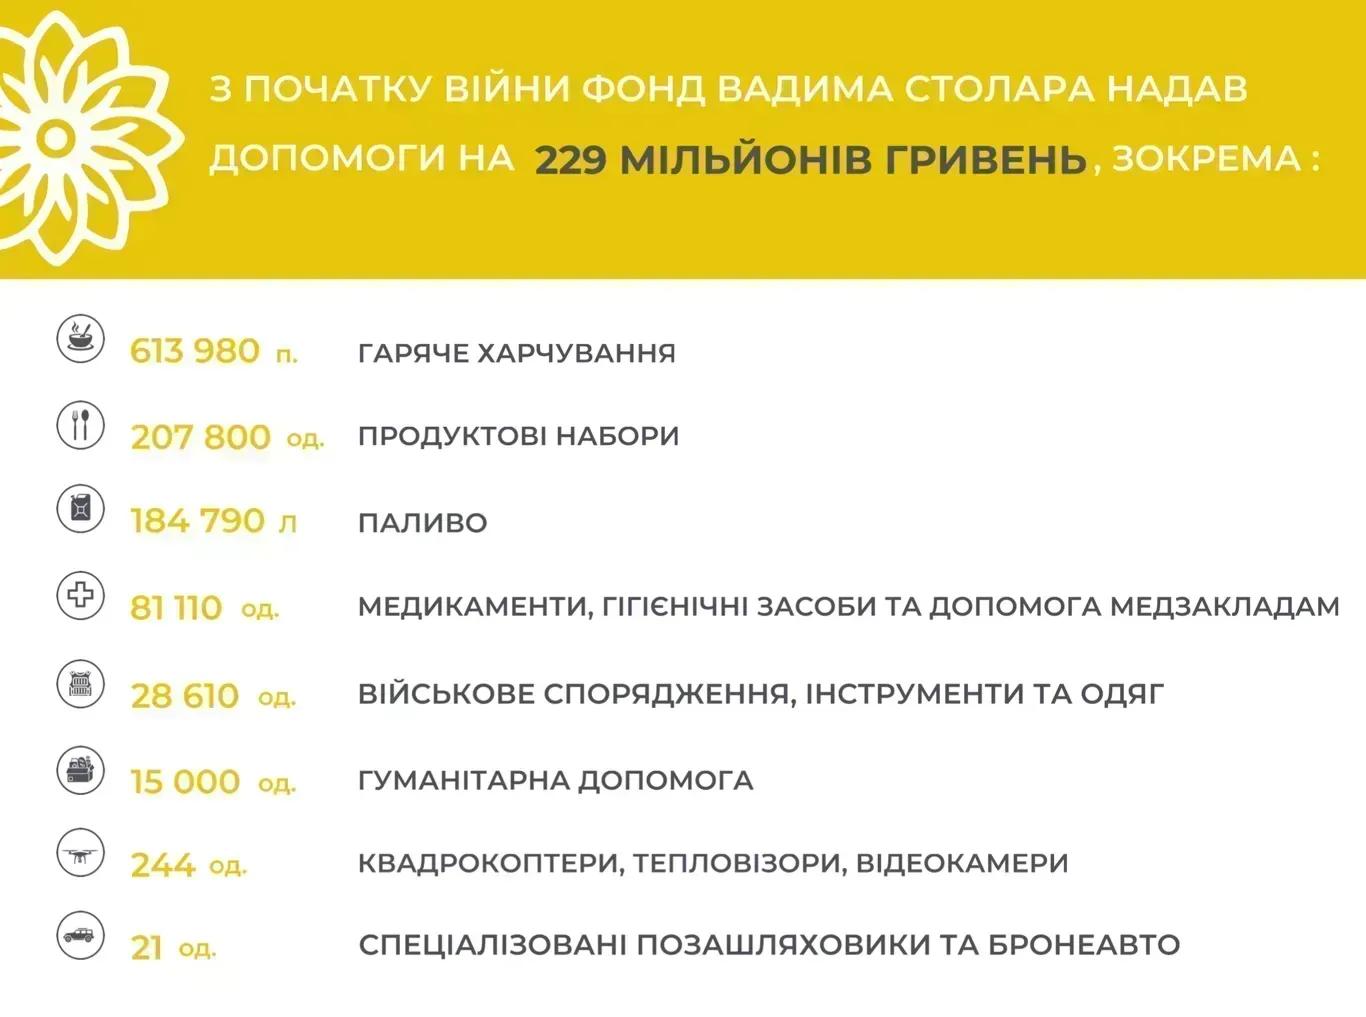 Підсумки-2022: за рік благодійні проєкти Фонду Вадима Столара охопили понад 1 мільйон українців